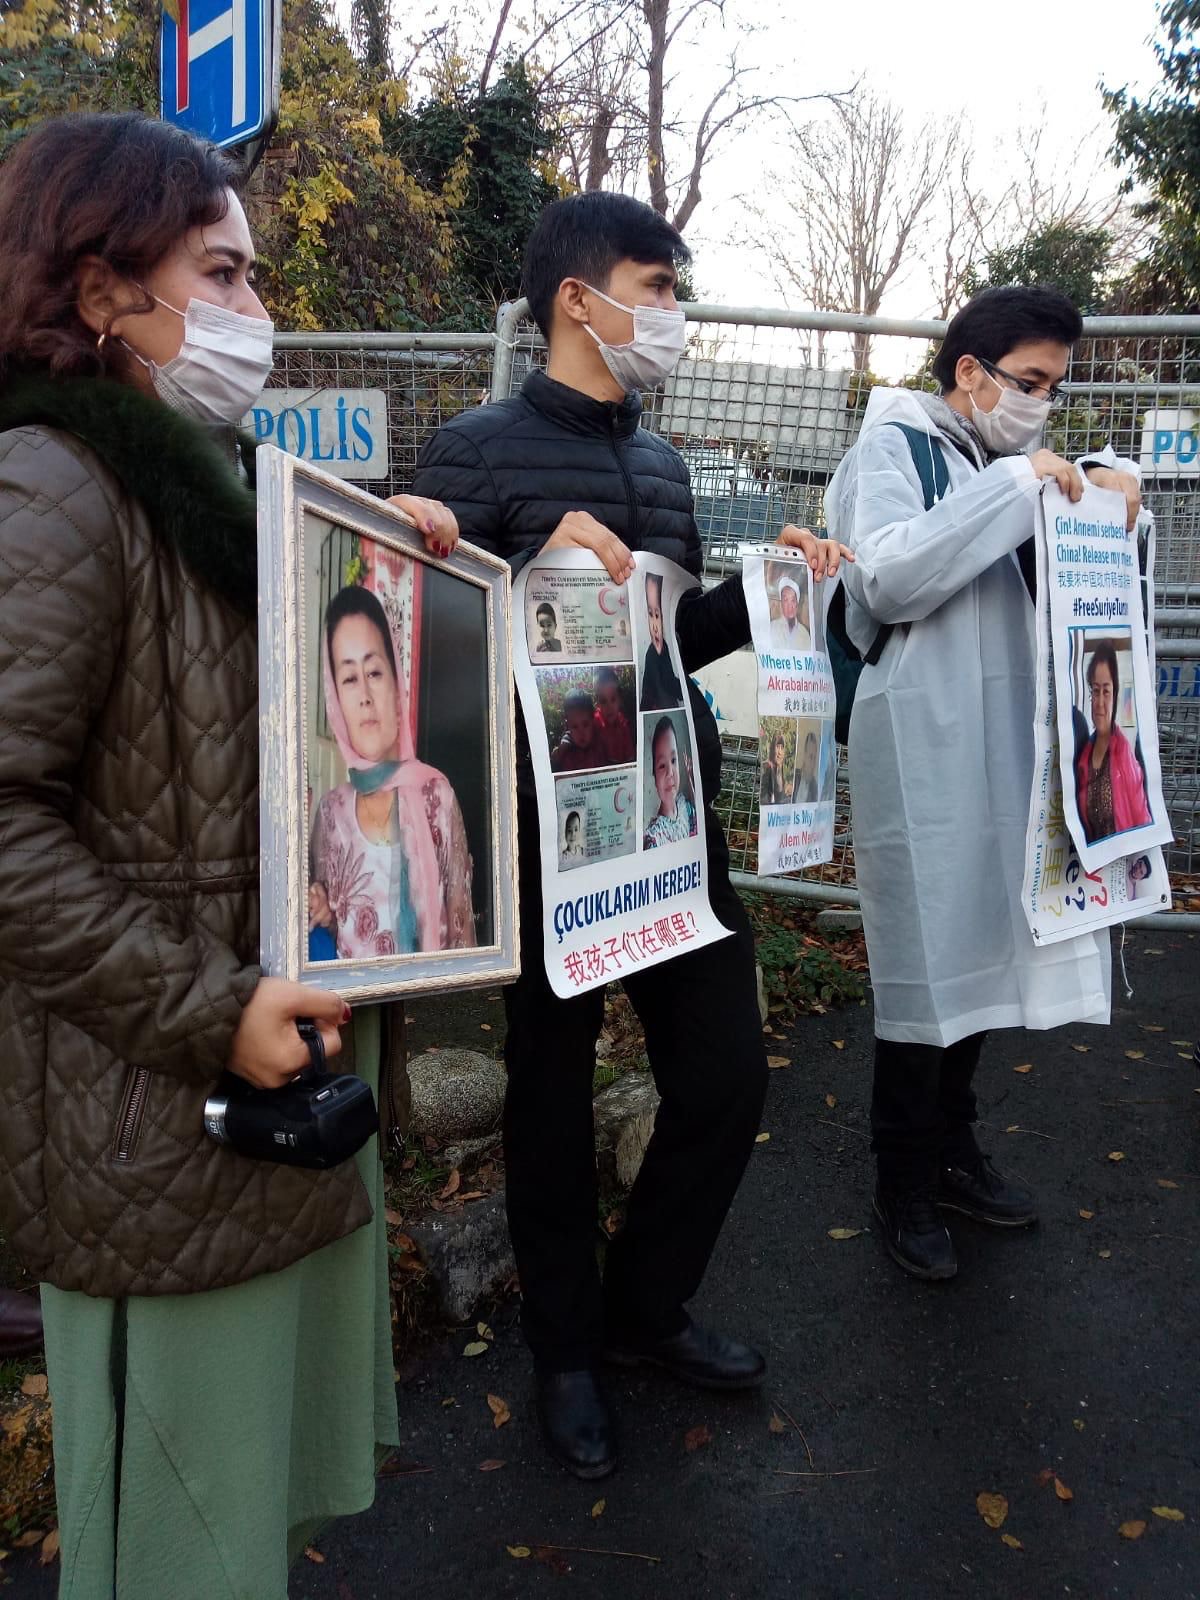 妈热娅姆.苏力坦和其他土耳其维吾尔人一起在土耳其中国大使馆前的抗议活动； 由作者提供。